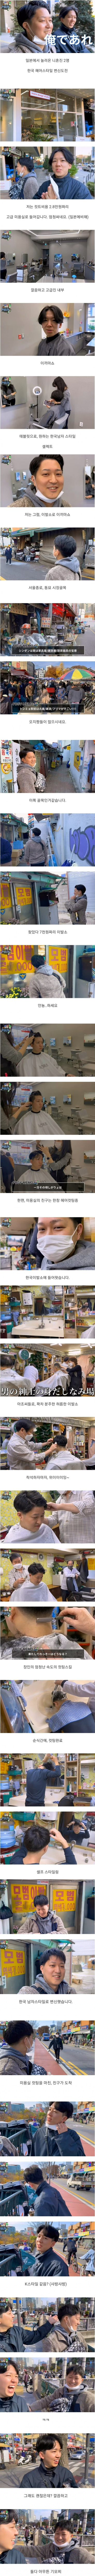 3 일본인들의 한국 이발소 VS 미용실 체험기.jpg